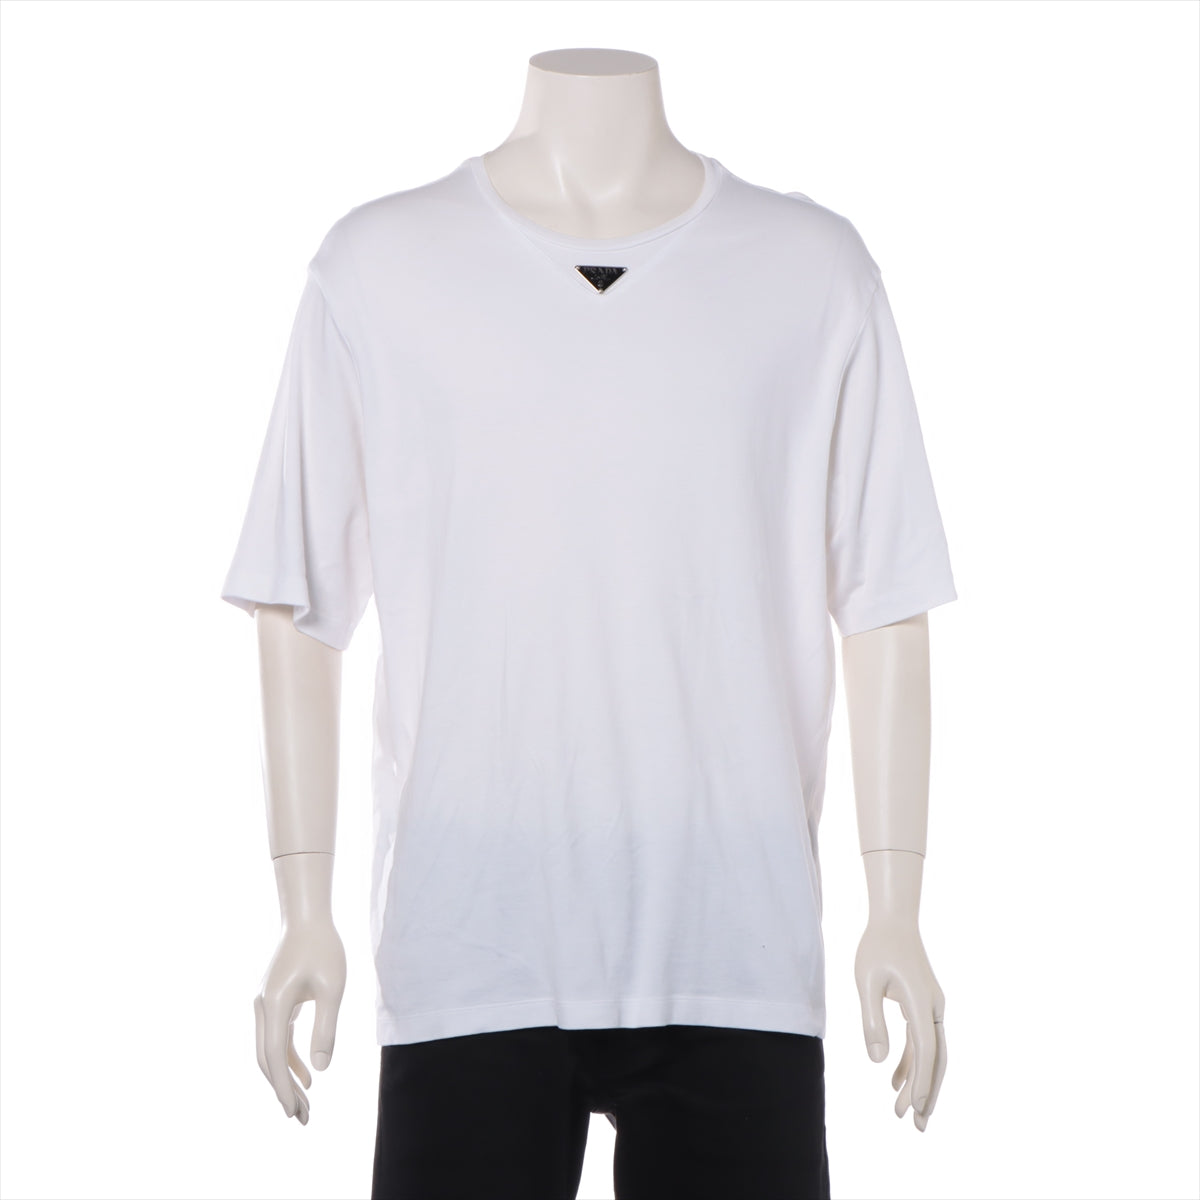 プラダ トライアングルロゴ 23年 コットン Tシャツ L メンズ ホワイト  UJN861